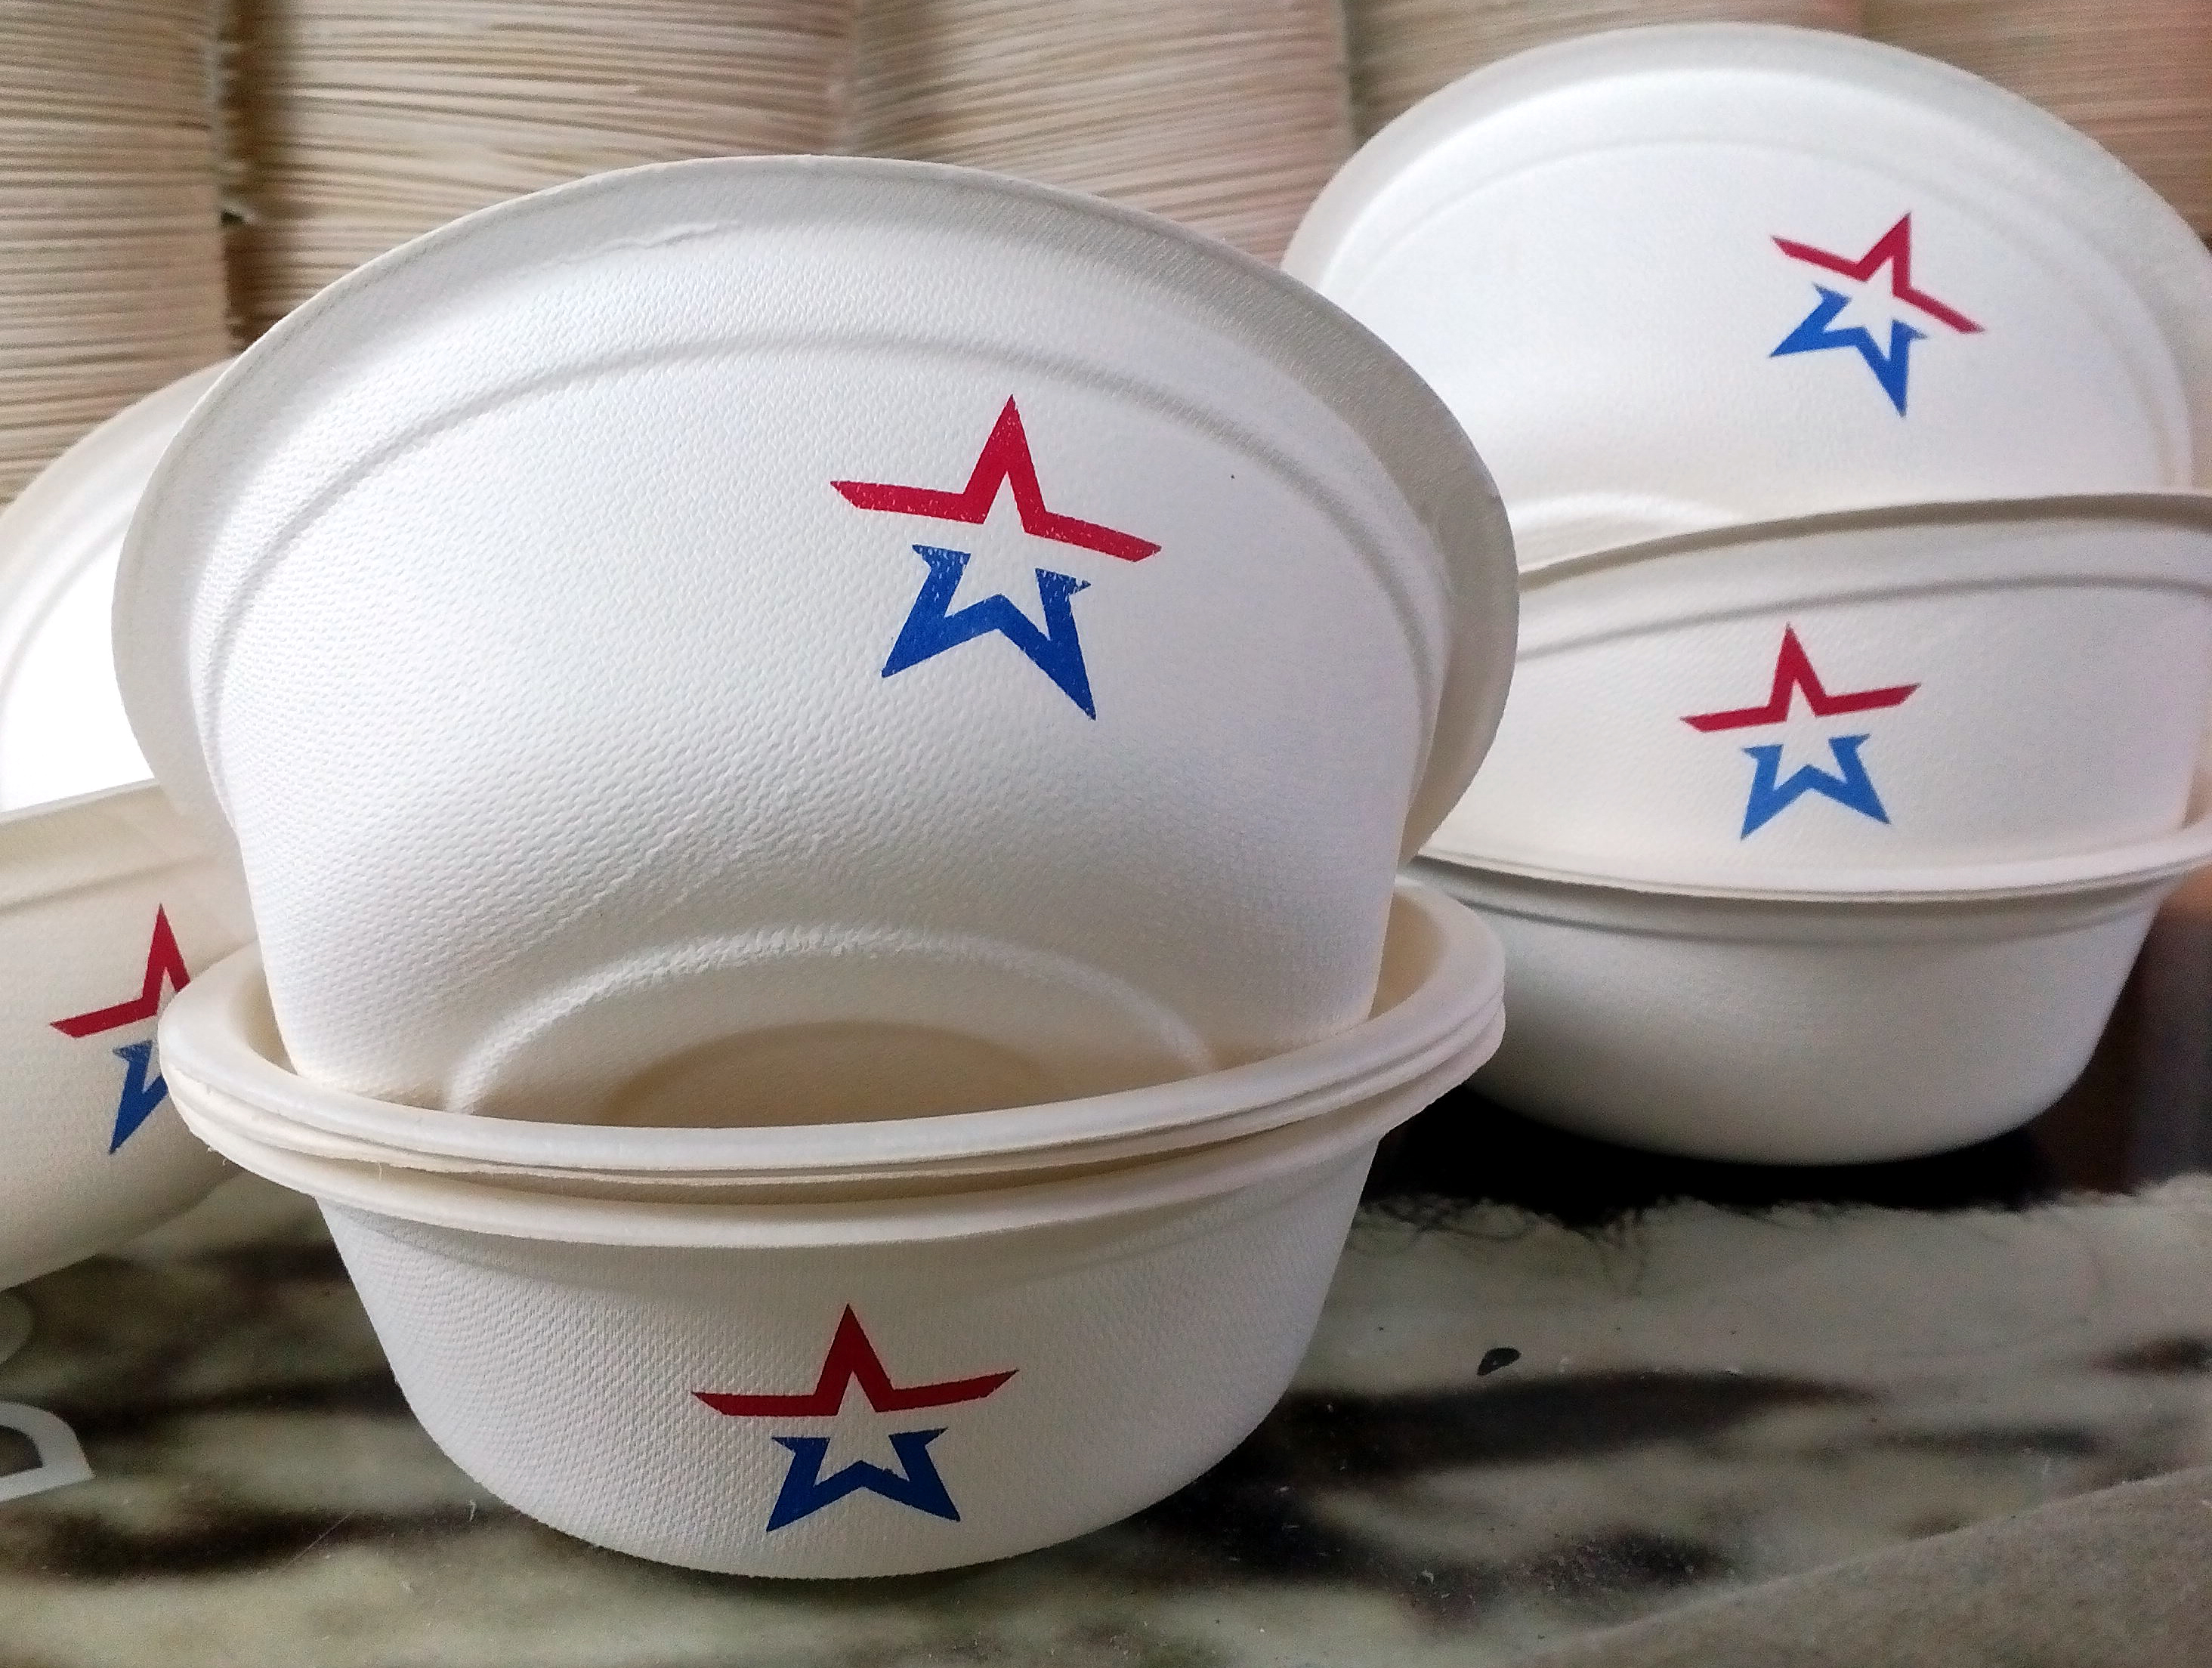 Армейская посуда. Армейская посуда в столовой. Армейская тарелка. Армейская пластиковая посуда. Посуда логотип.